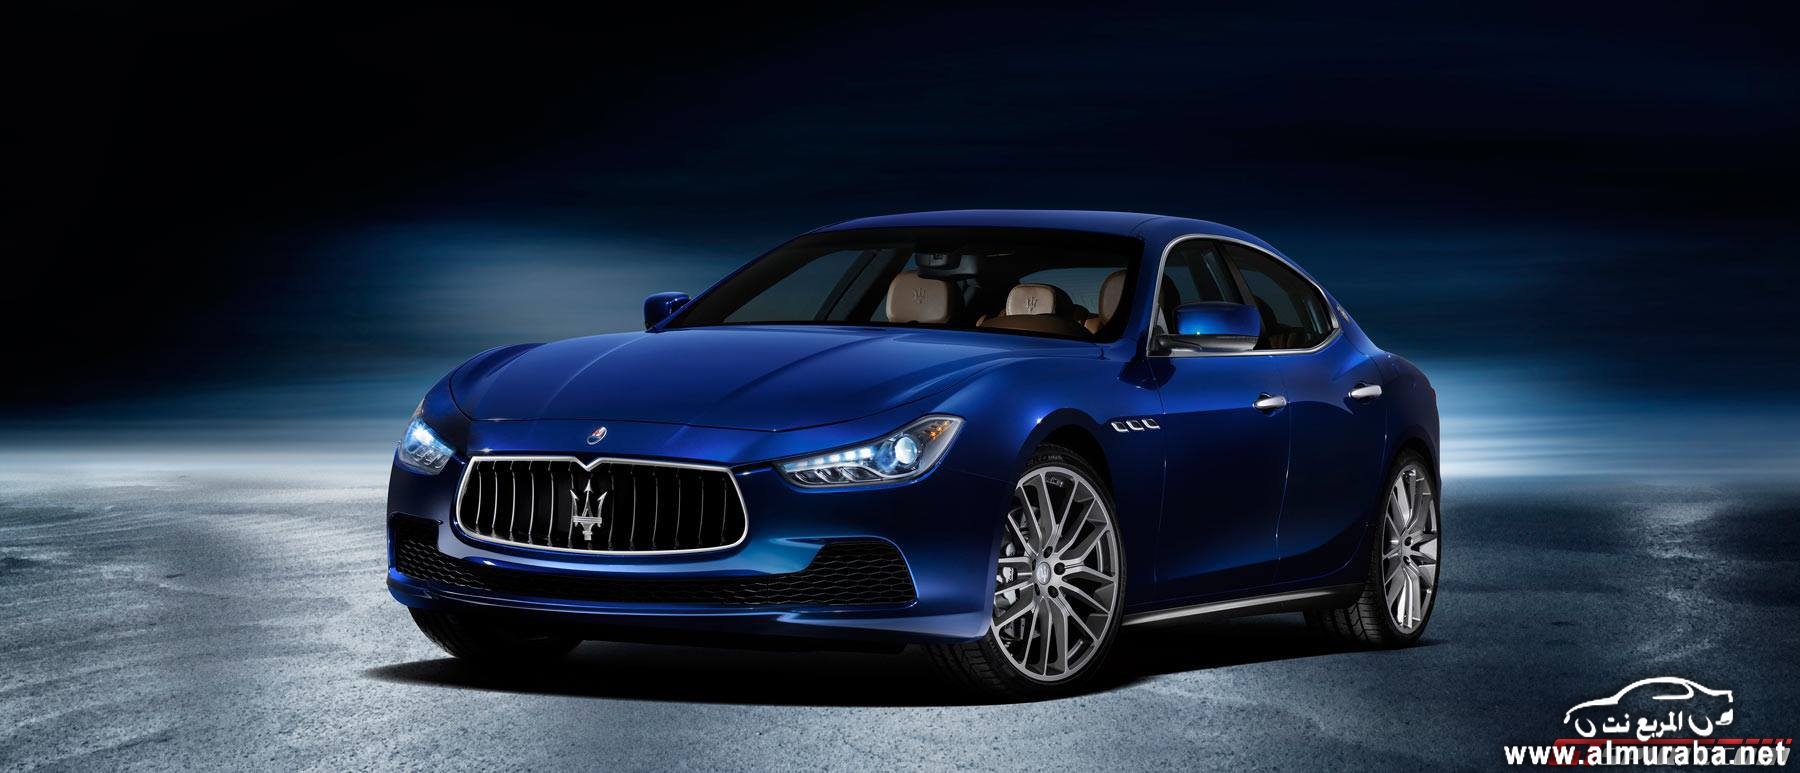 نسخة جديدة من مازيراتي جيبلي باللون الازرق القاتم Maserati Ghibli Blu 15